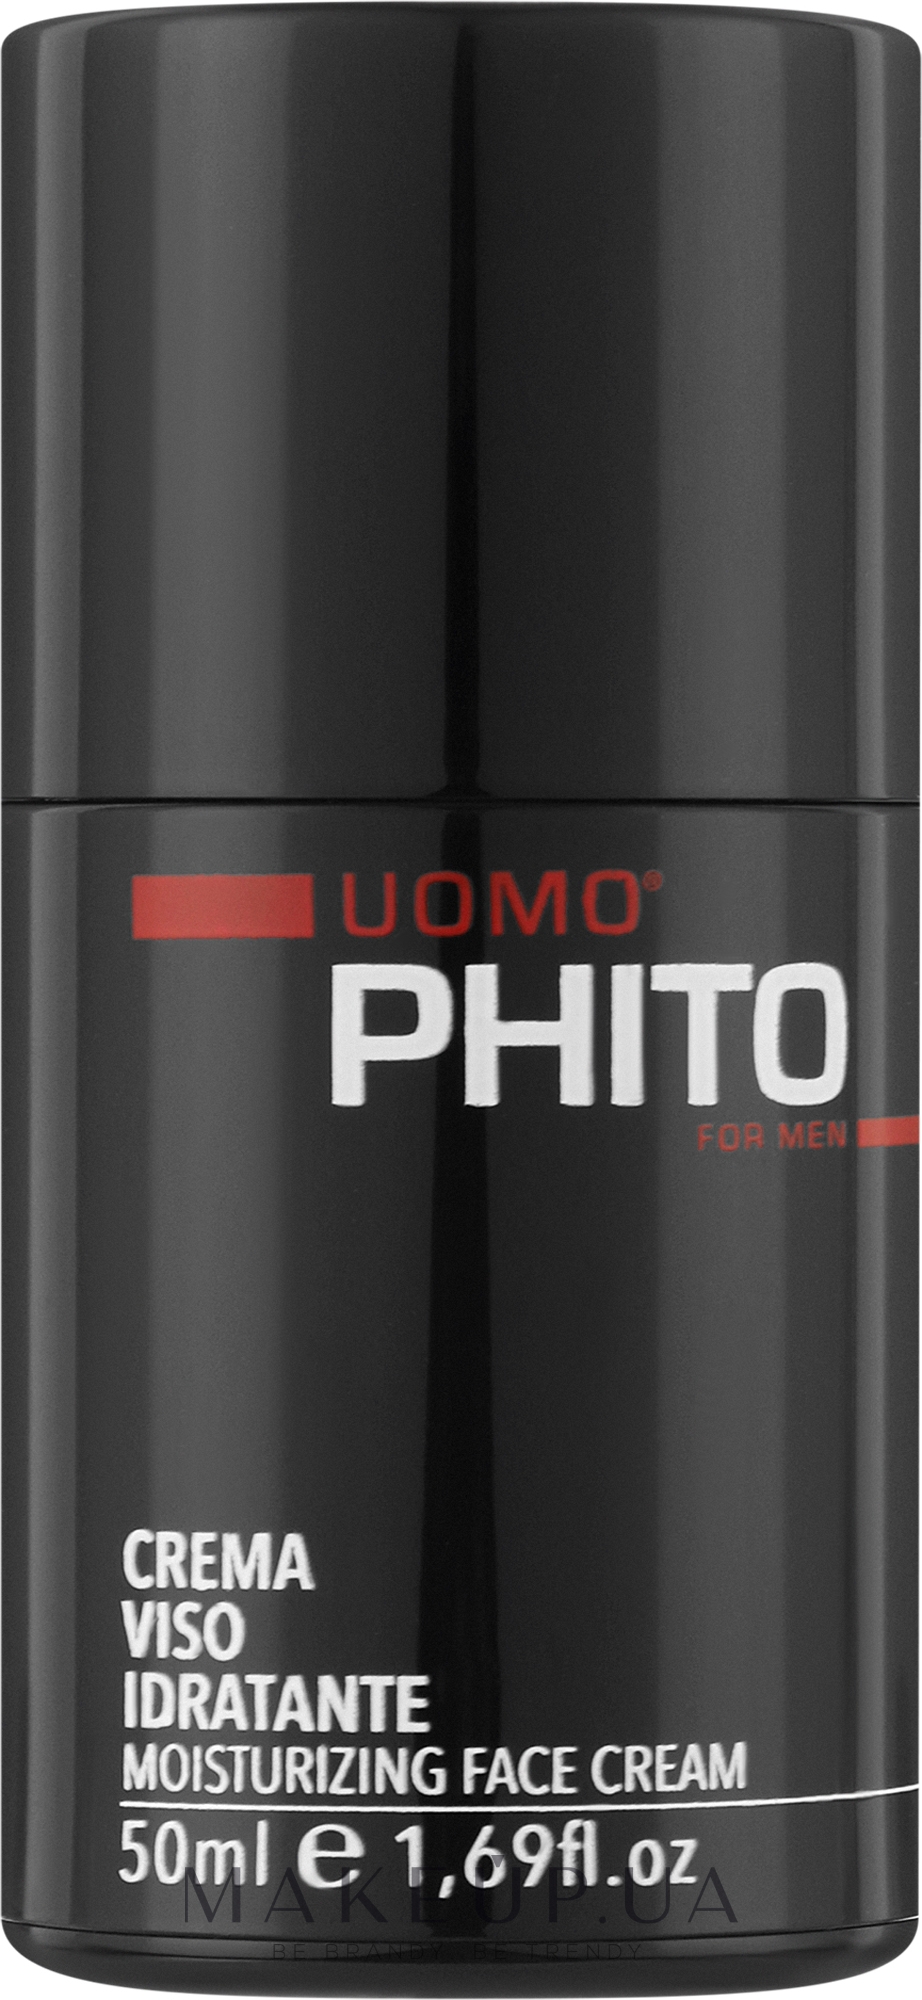 Зволожувальний крем для обличчя, для чоловіків - Phito Uomo Moisturizing Face Cream — фото 50ml